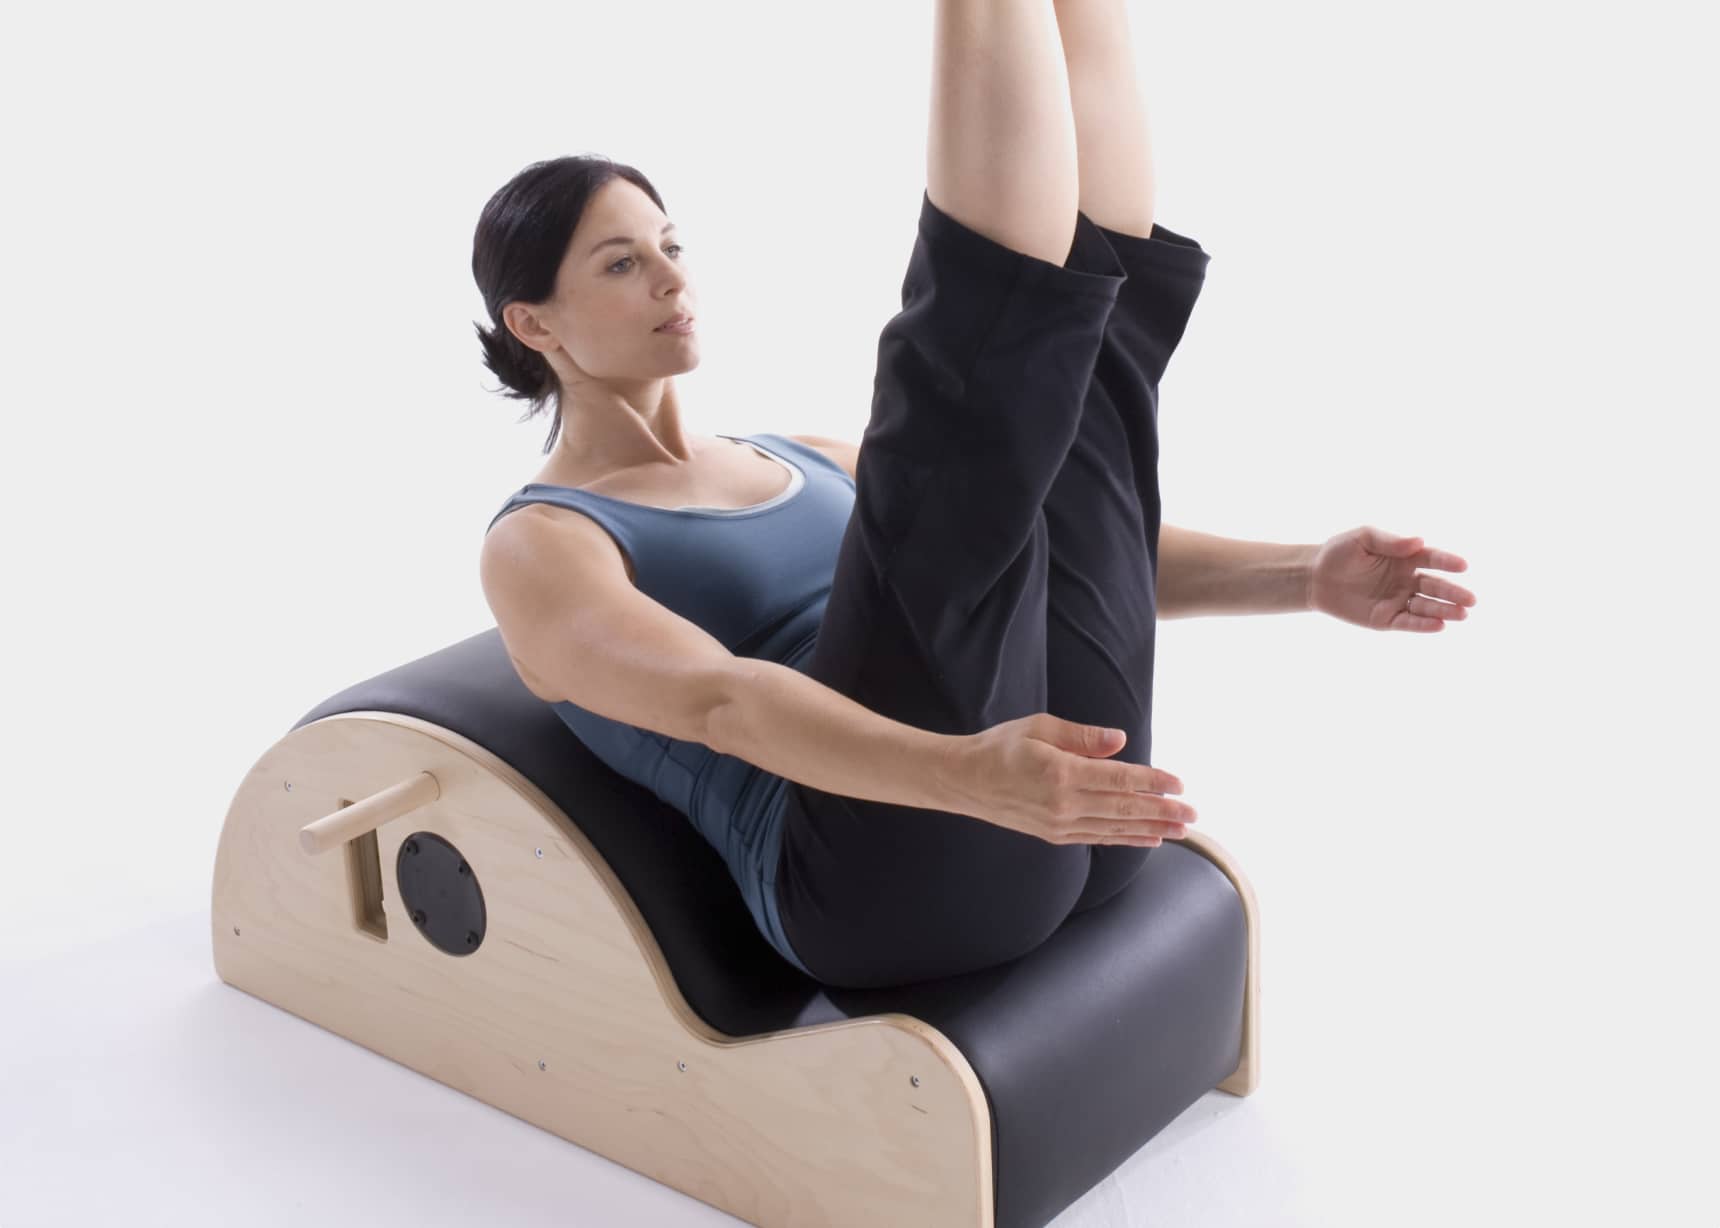  Balanced Body Contour Step Barrel, Ergonomic Spine